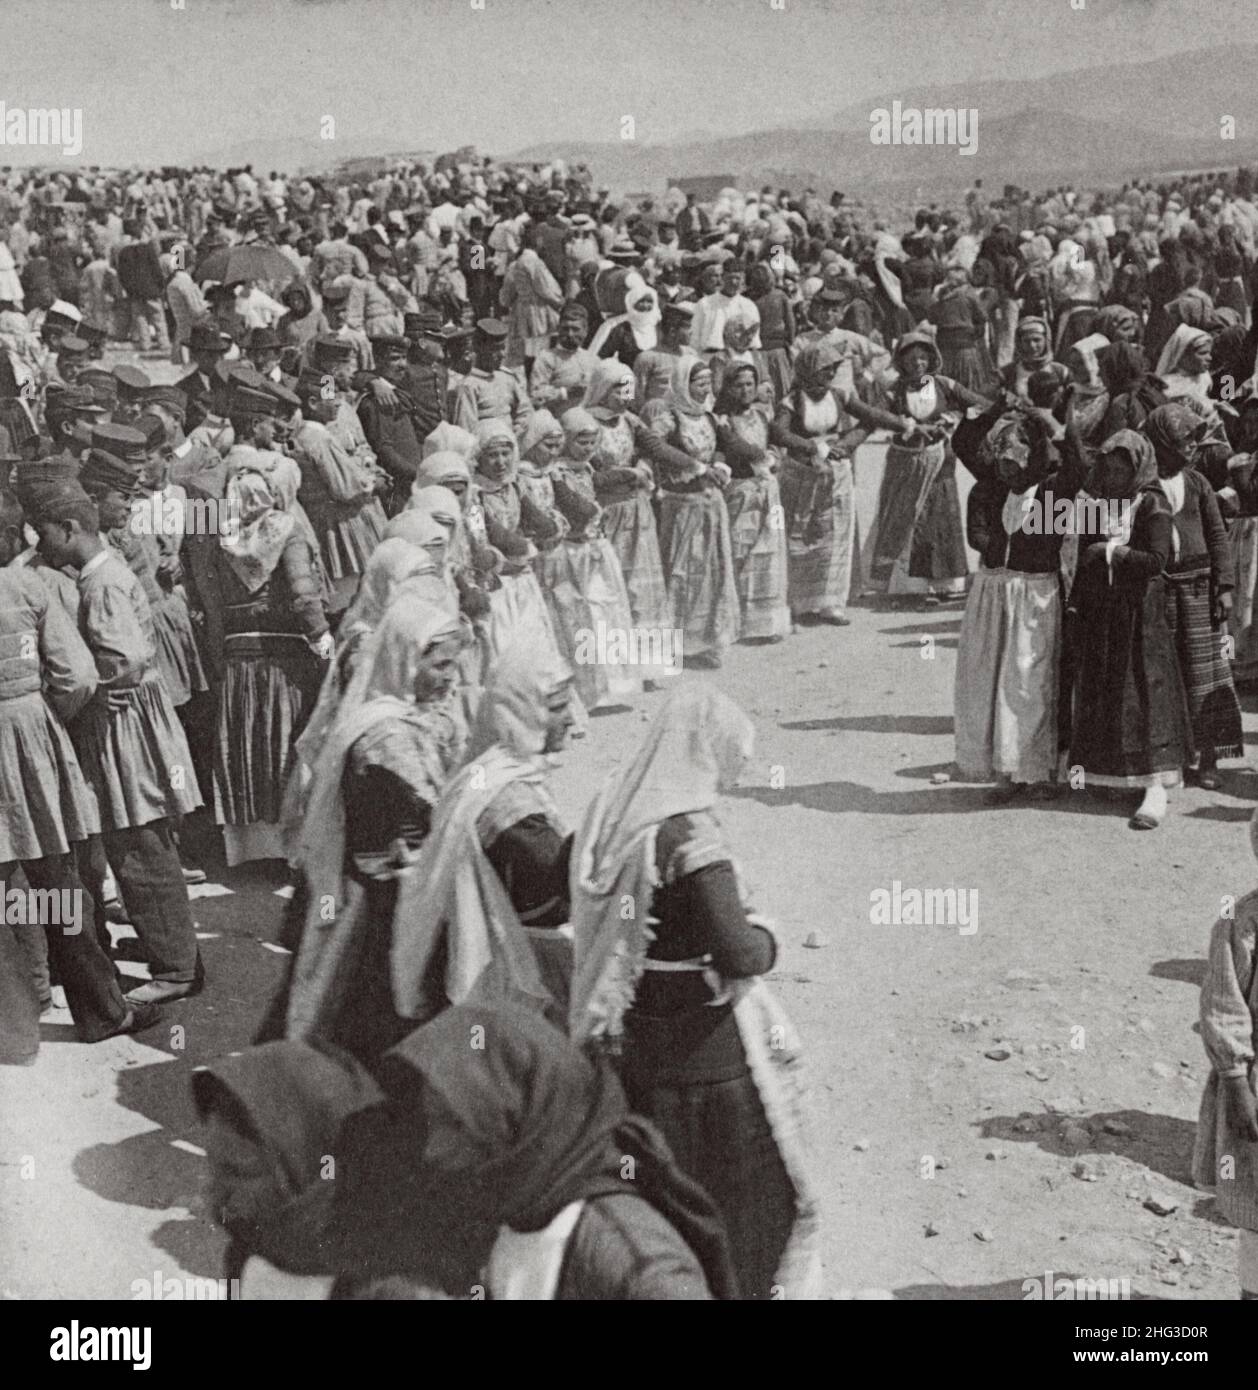 Foto vintage de los tipos griegos antiguos de belleza entre las mujeres del pueblo en un baile de Pascua, Megara, Grecia. 1900s Foto de stock